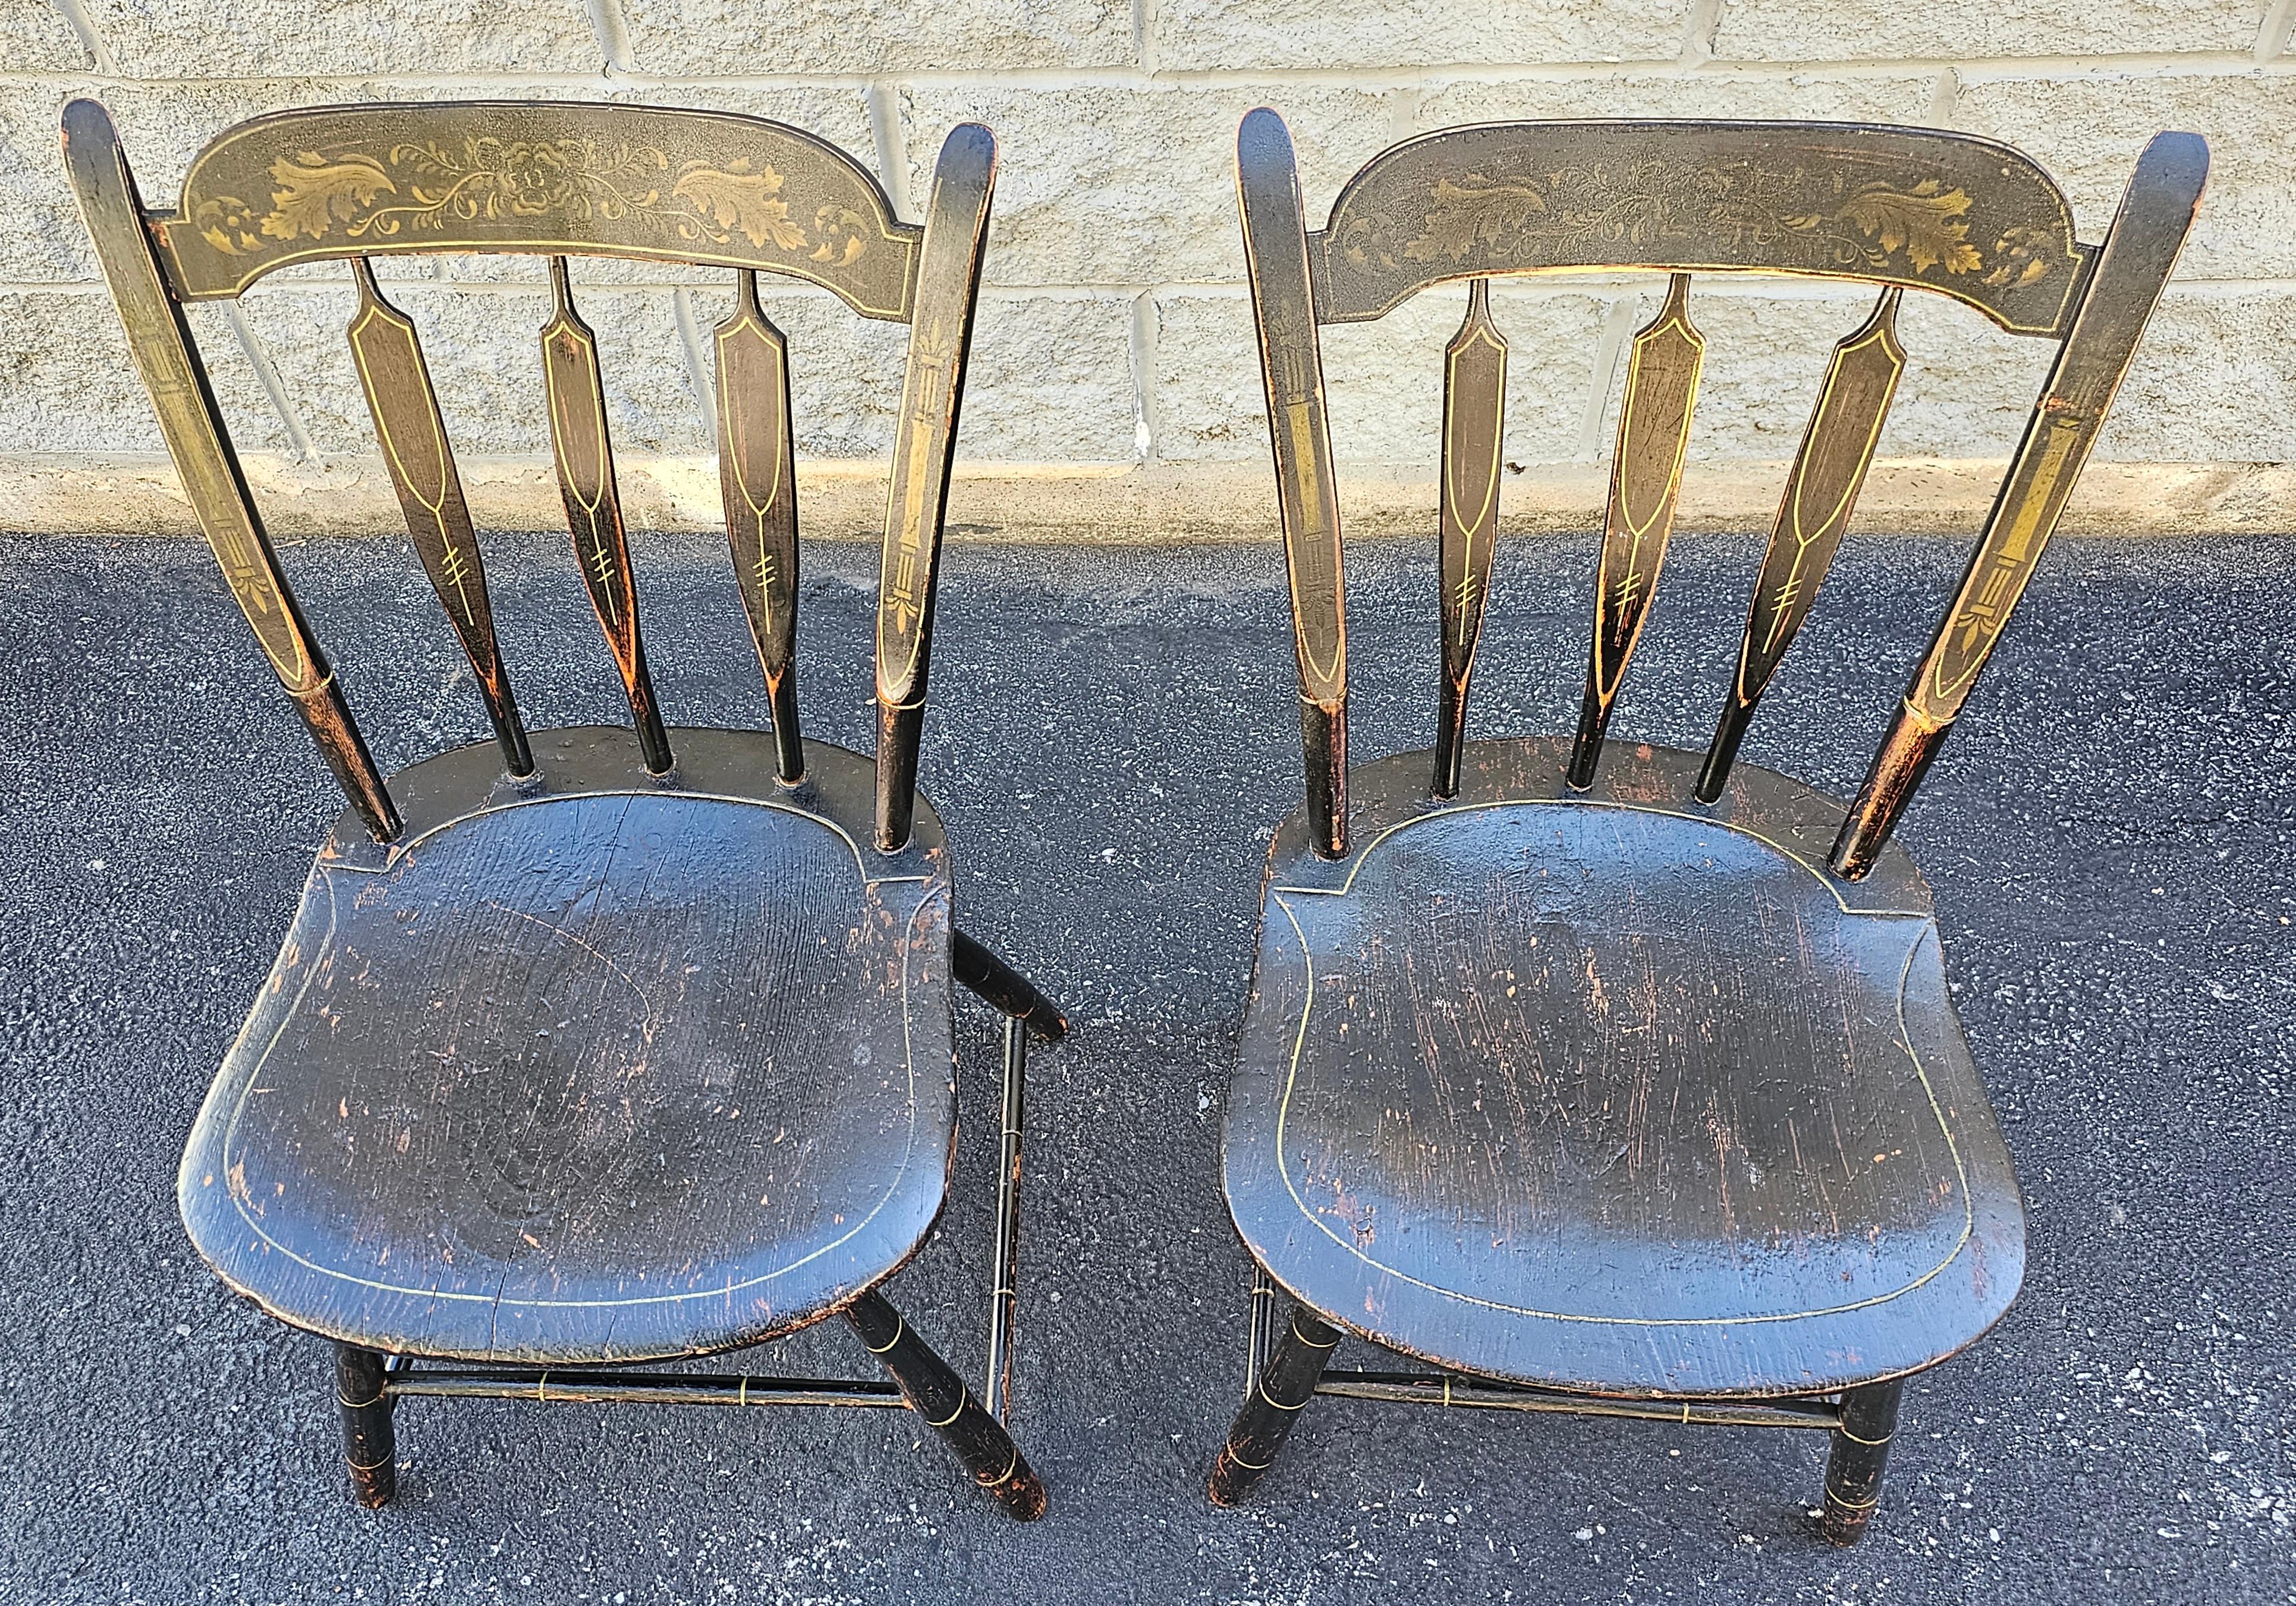 Ein Paar frühe amerikanische Ebonisierte und handbemalte und verzierte Beistellstühle des 19. Jahrhunderts mit toller Patina.
Messen Sie 19